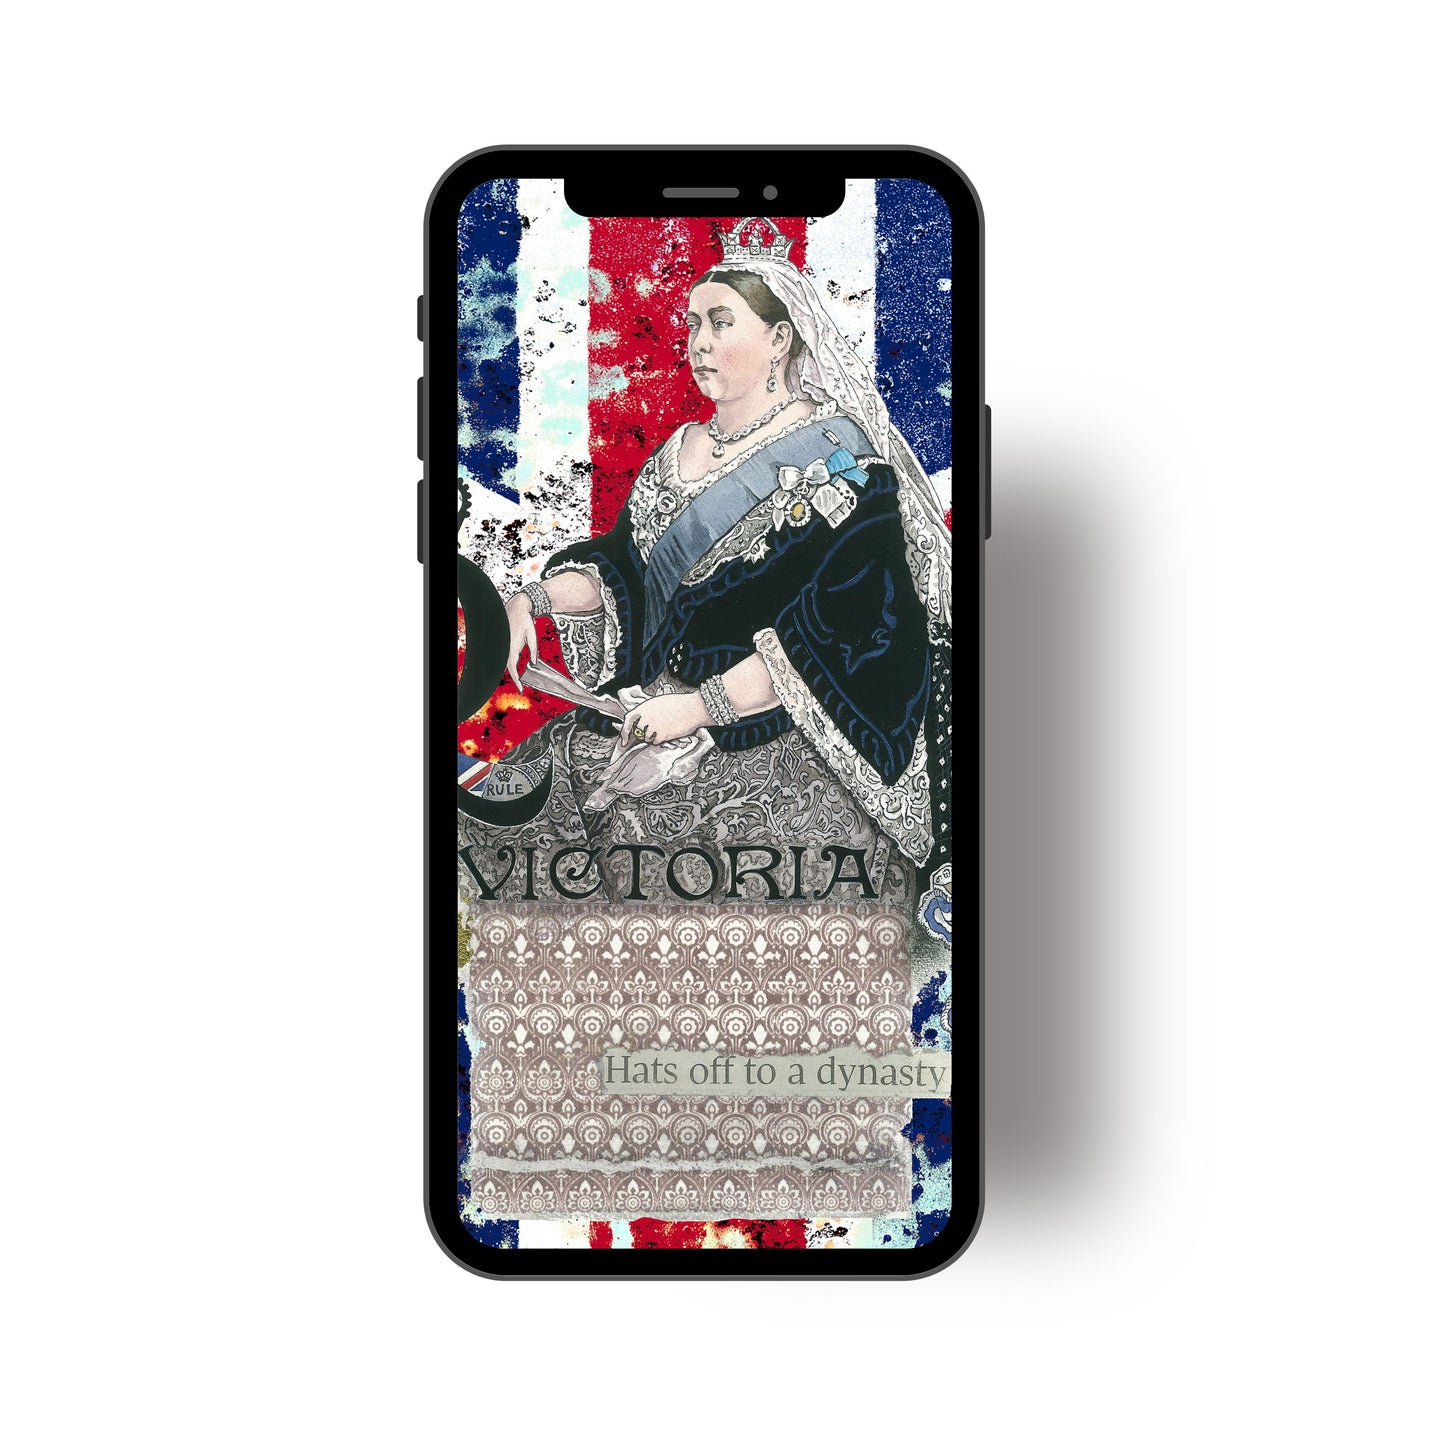 Queen Victoria Phone Art Wallpaper